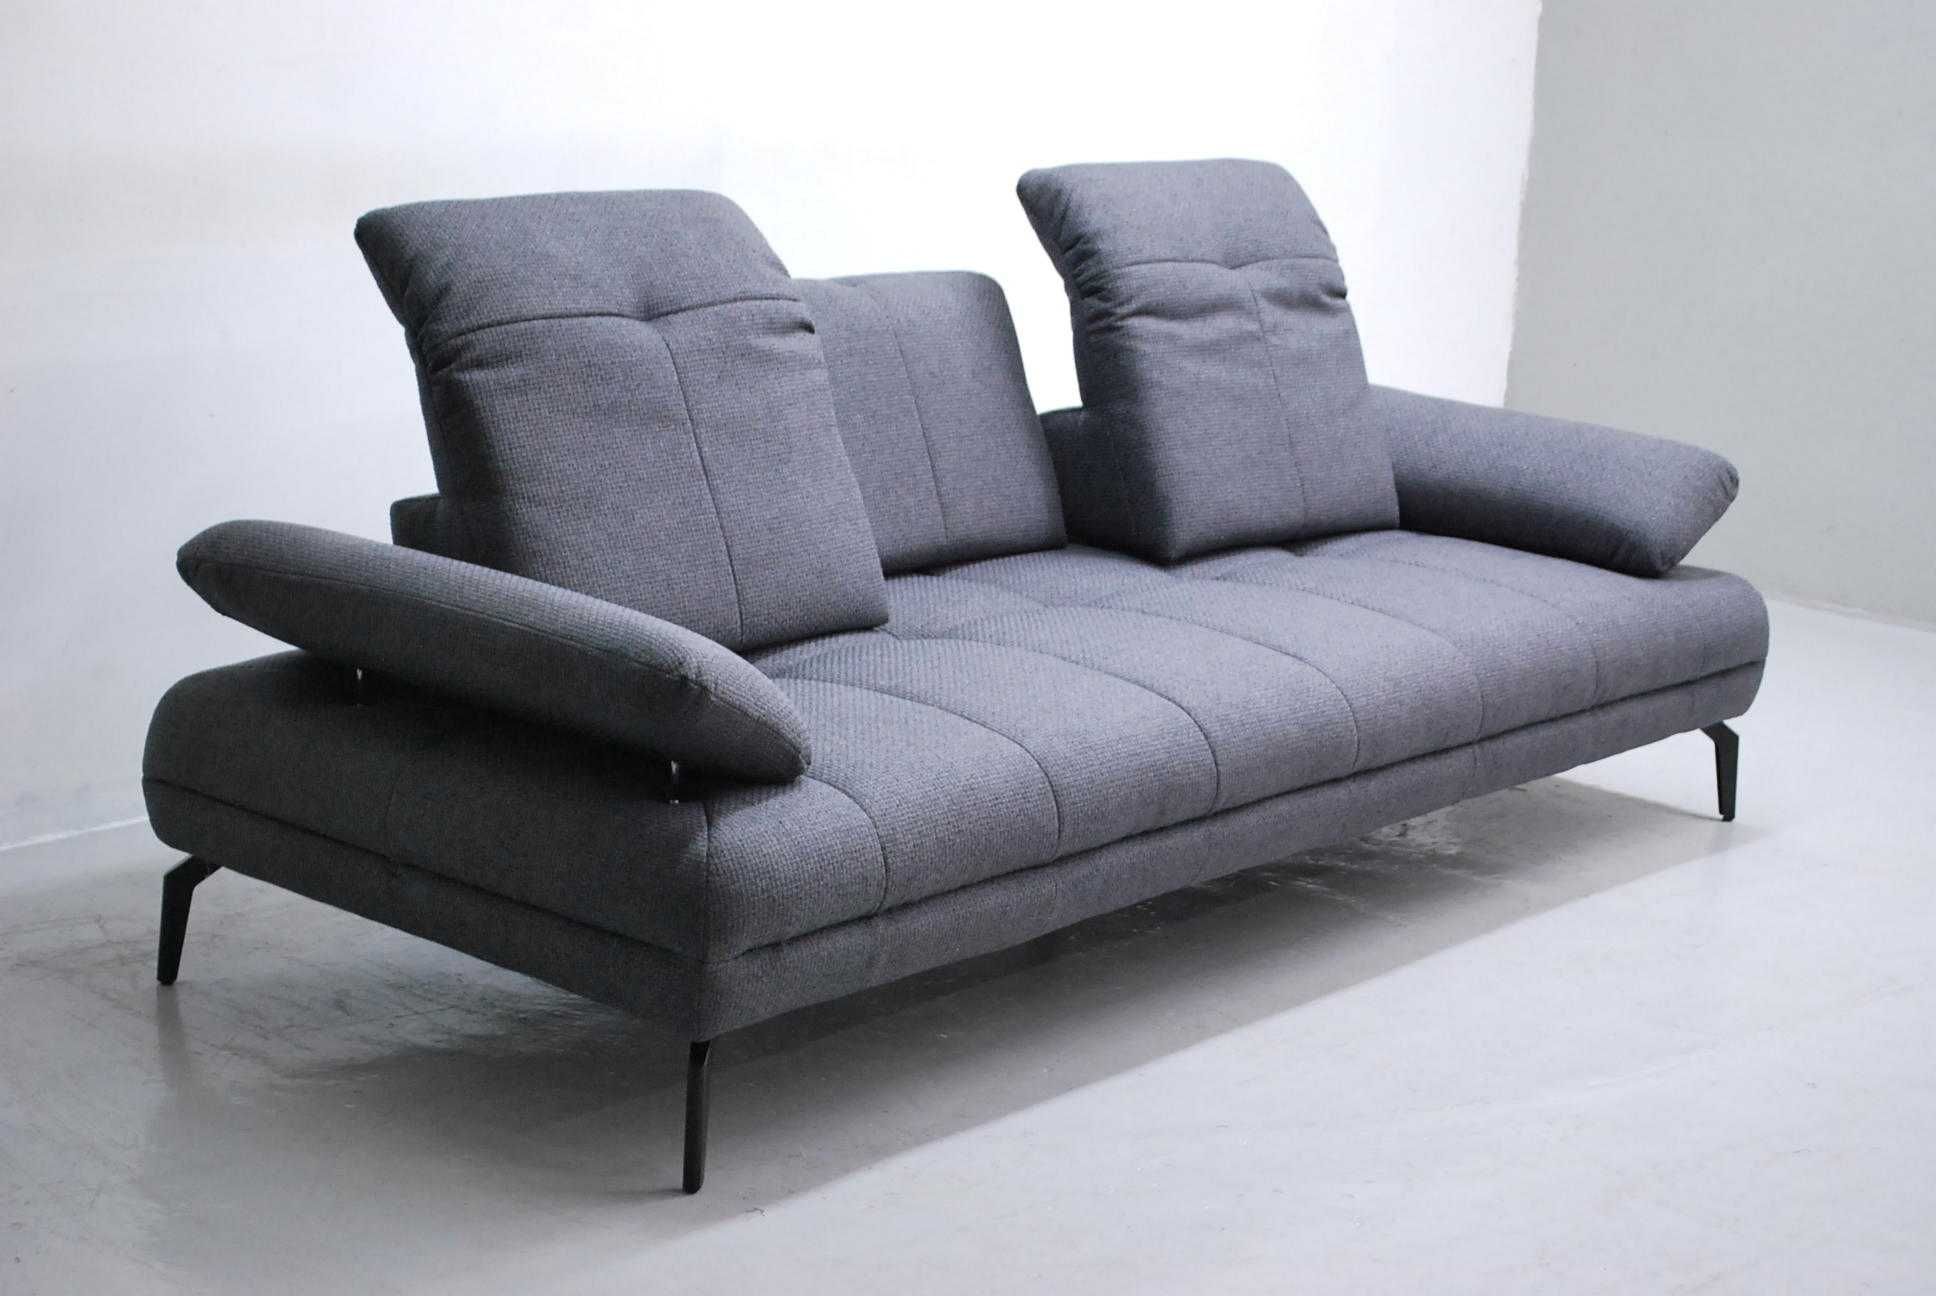 RZP nowa nowoczesna sofa 3 osobowa KANAPA popielata tkanina oparcie r